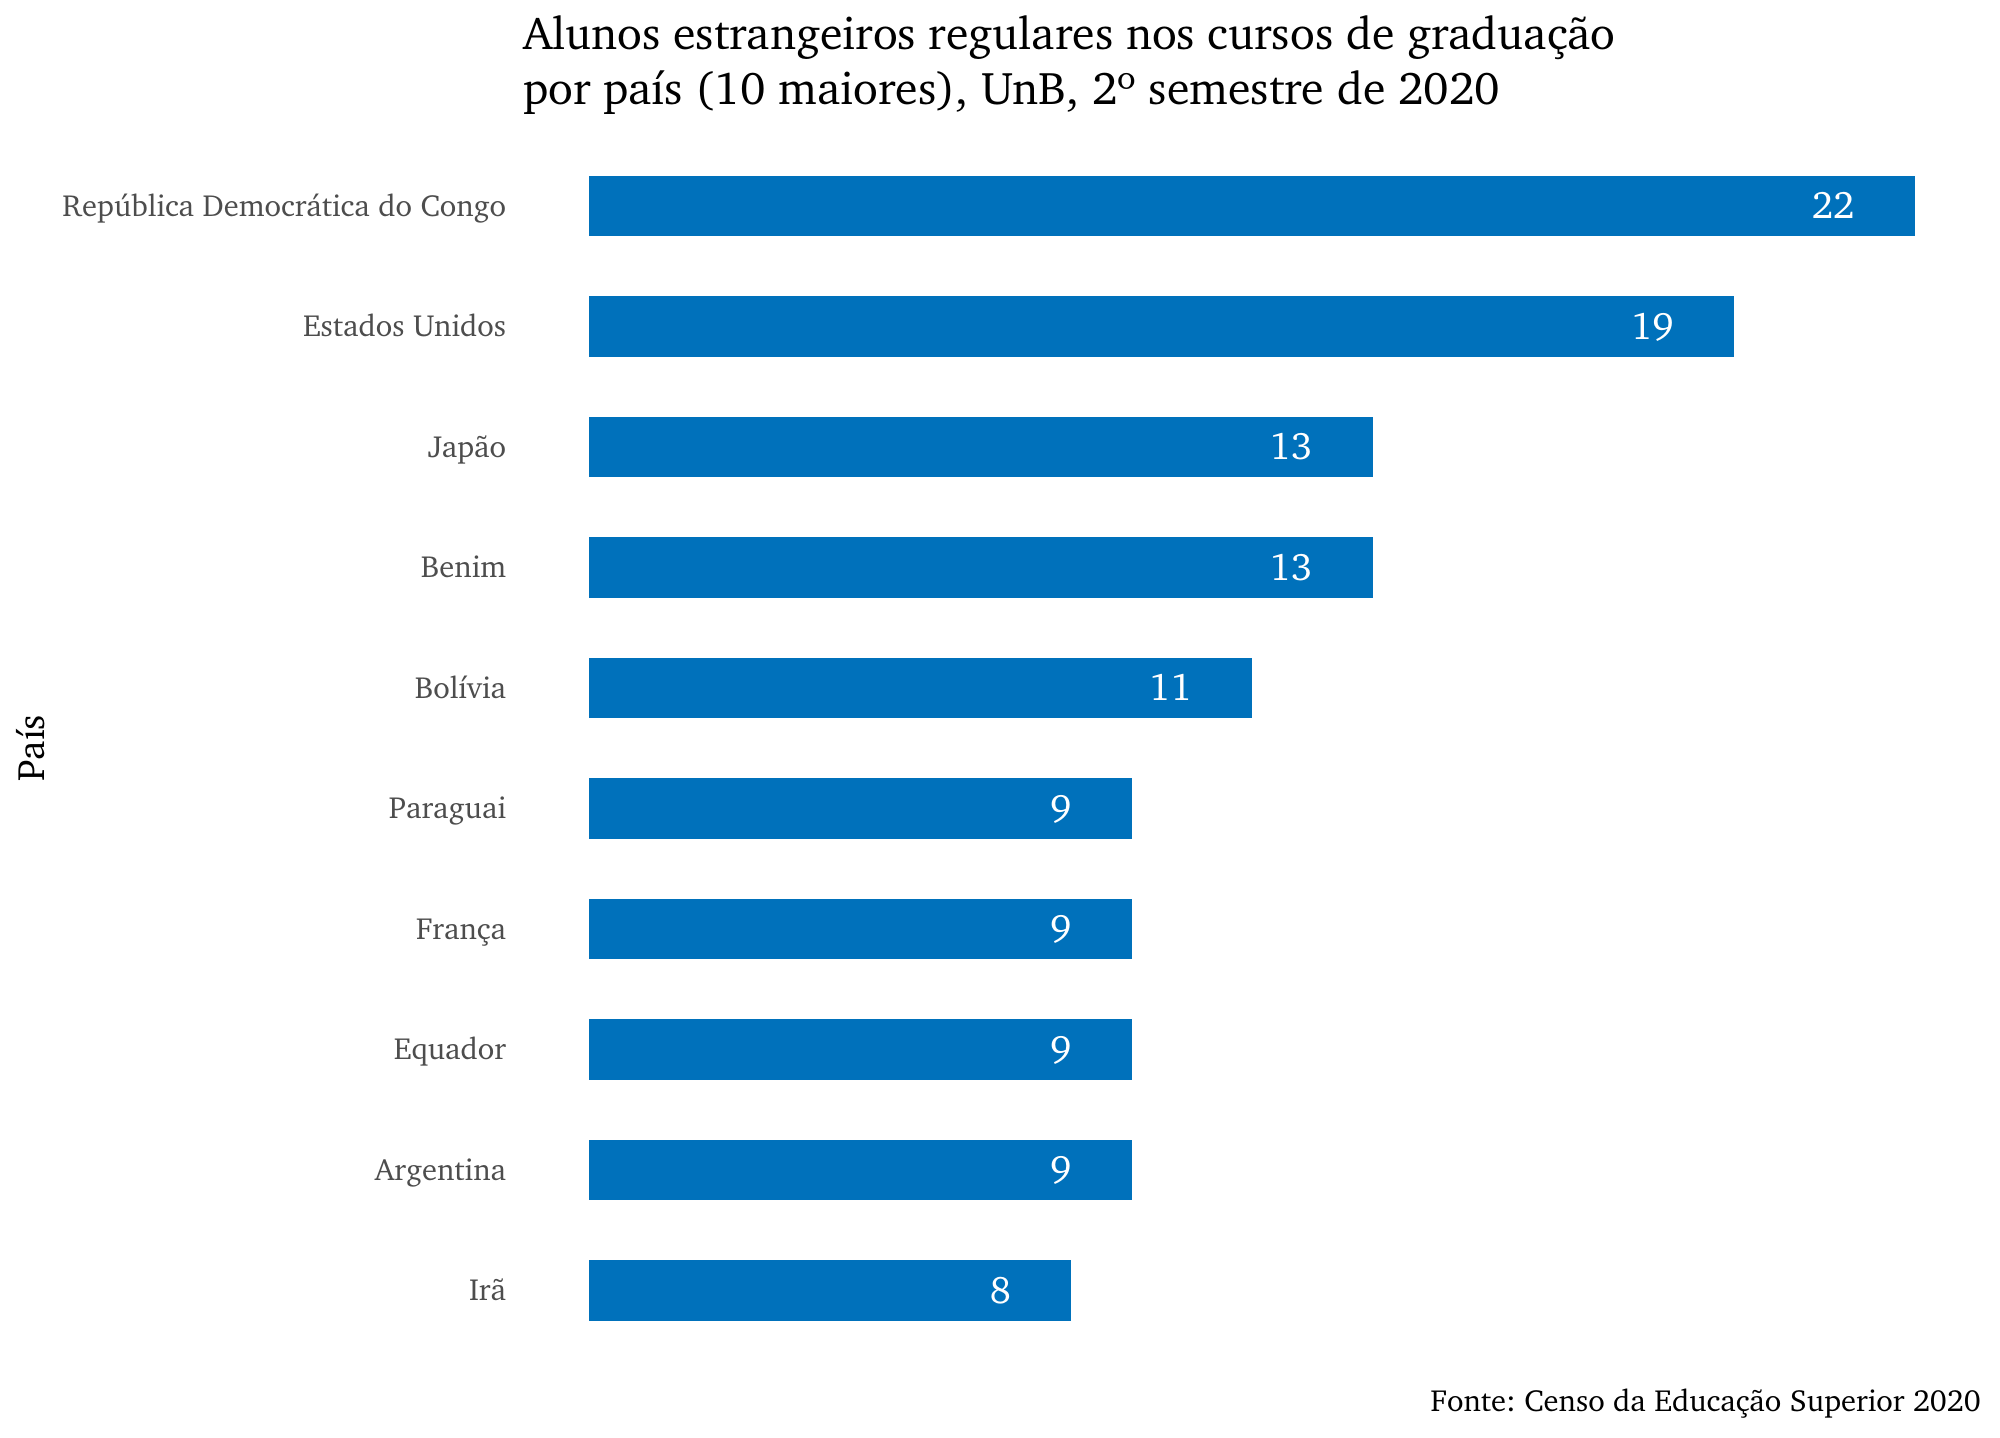 Alunos estrangeiros regulares nos cursos de graduação por país (10 maiores), UnB, 2º semestre de 2020